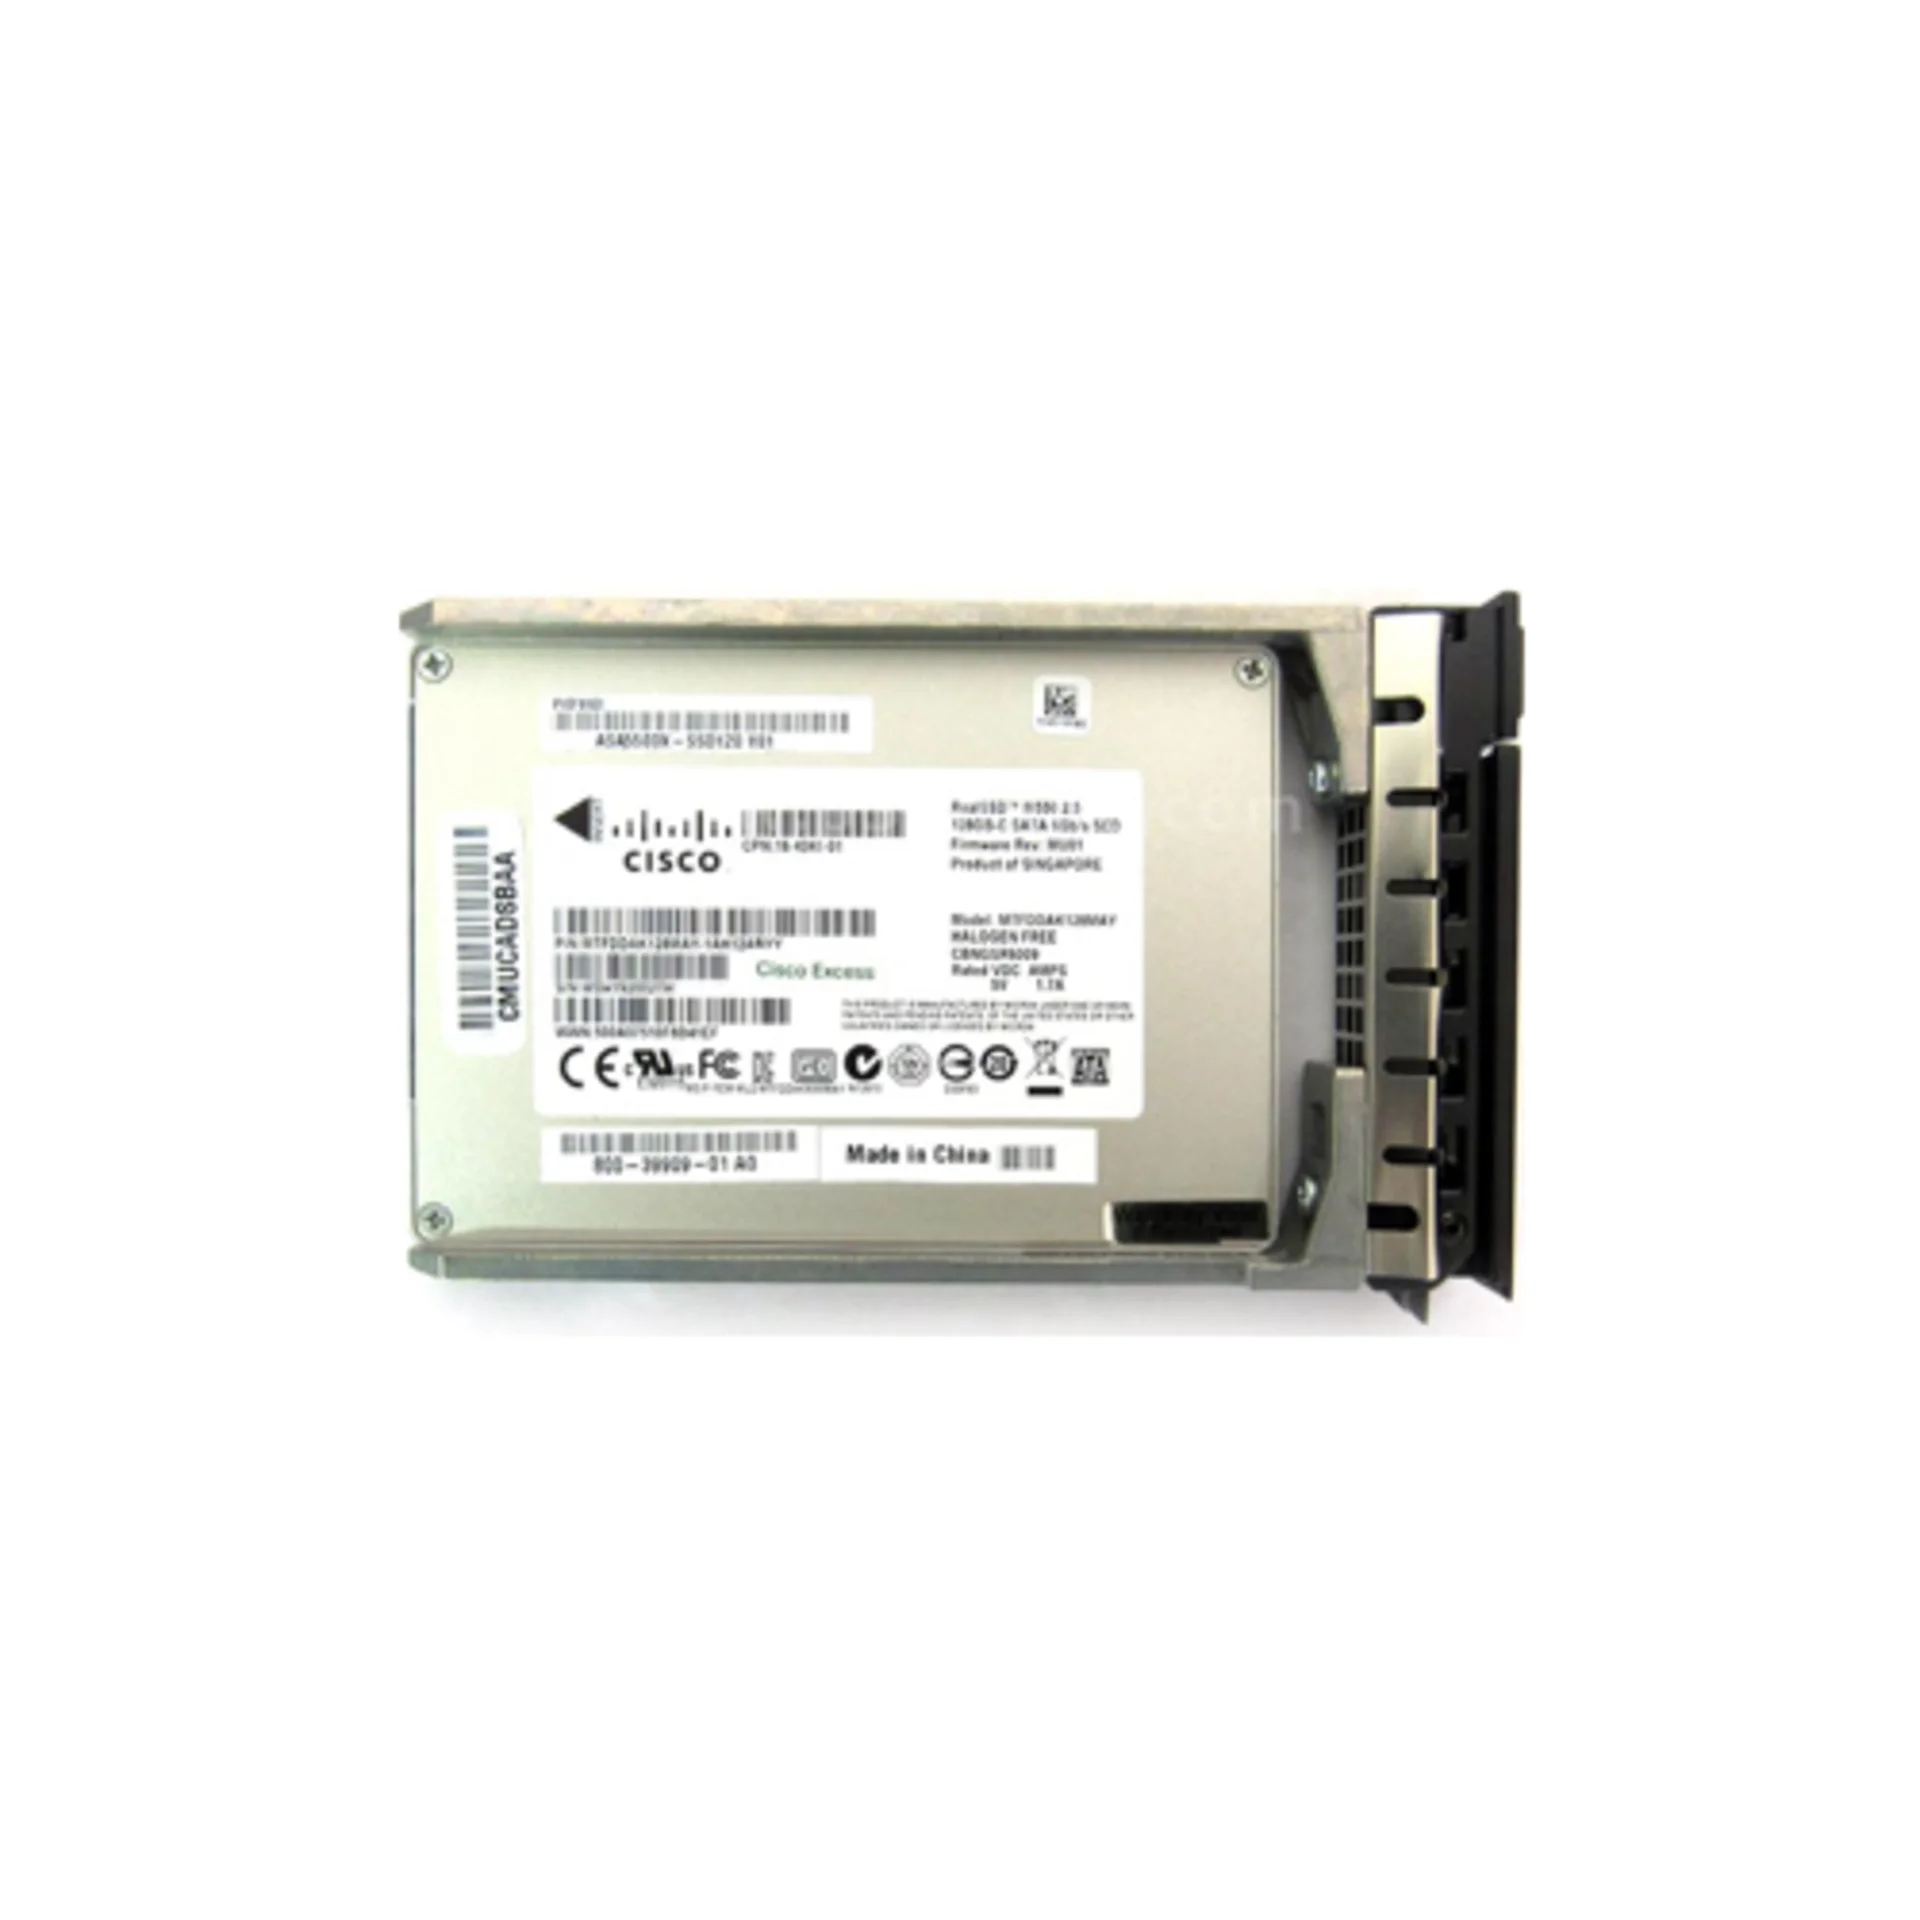 Cisco ASA5500X-SSD120 - Твердотельный накопитель на 120 Gb для межсетевых экранов ASA5500X серии с салазкой [59598] купить в Казани 	SSD накопитель Cisco 120 ГБ ASA5500X-SSD12028-05-2024